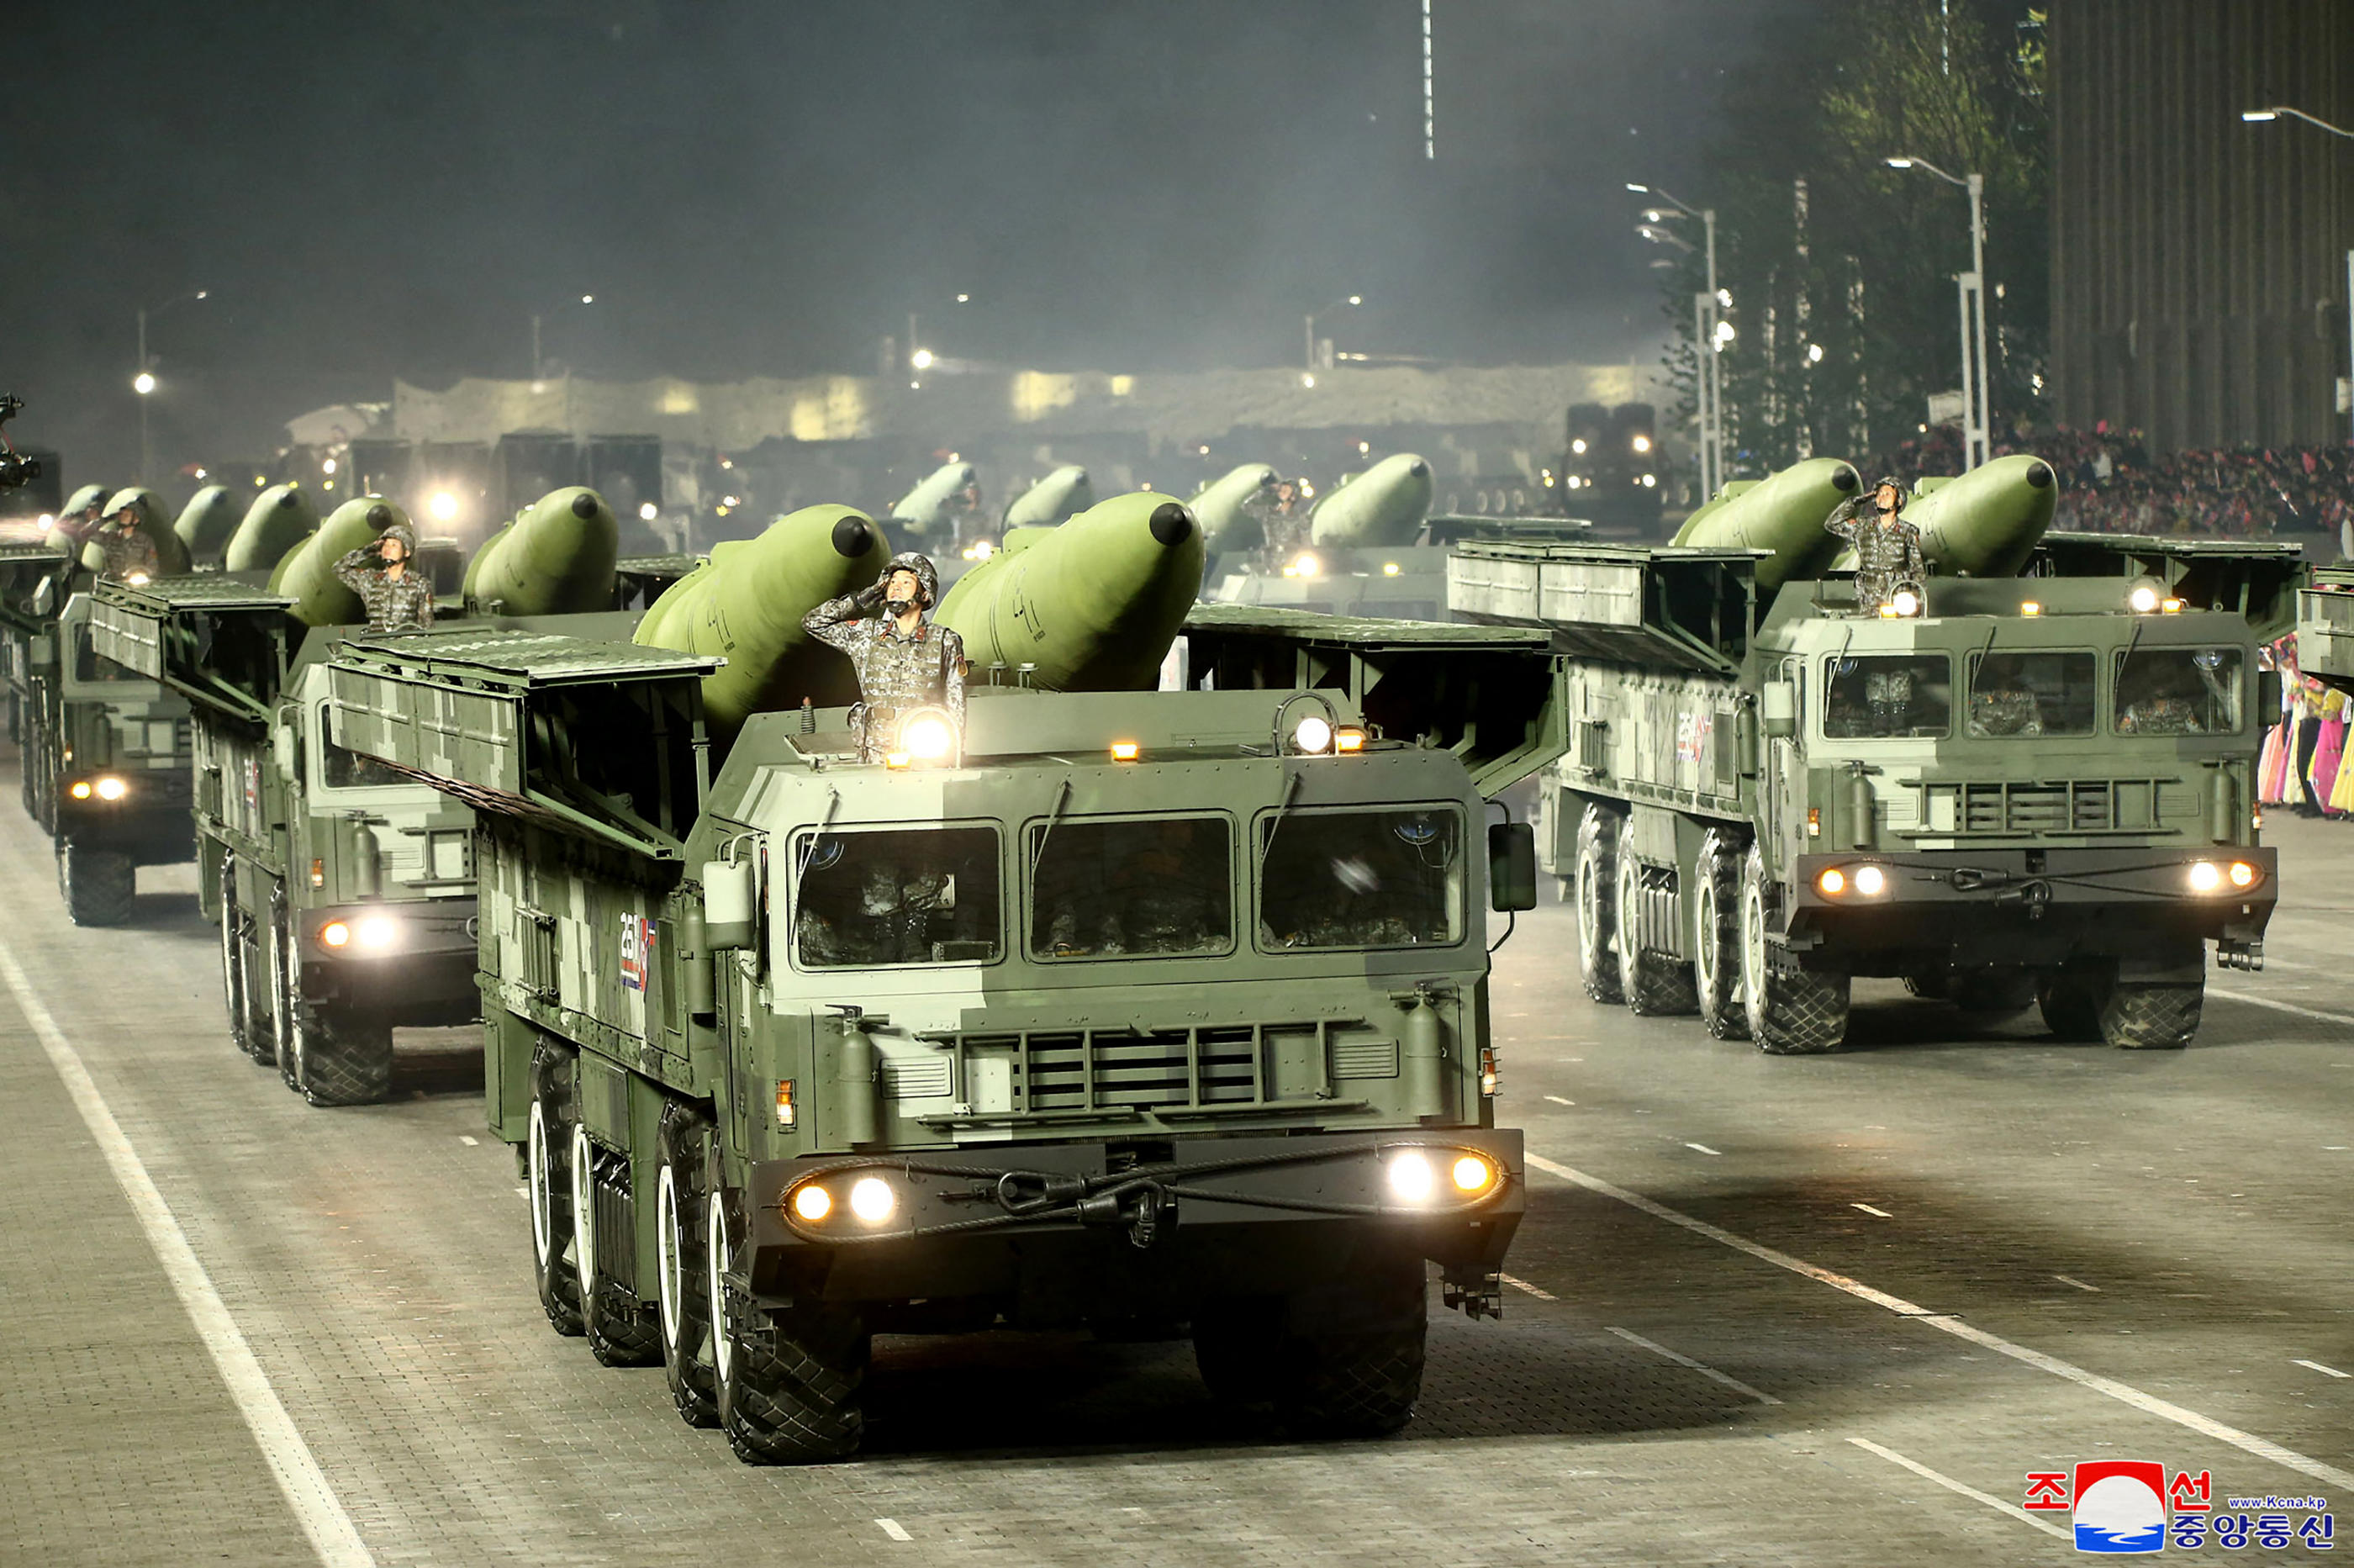 La Russie pourrait envisager de se tourner vers la Corée du Nord pour des livraisons d'armes dans le cadre de la guerre en Ukraine (illustration, lors d'un défile militaire en avril 2022). AFP PHOTO/KCNA VIA KNS